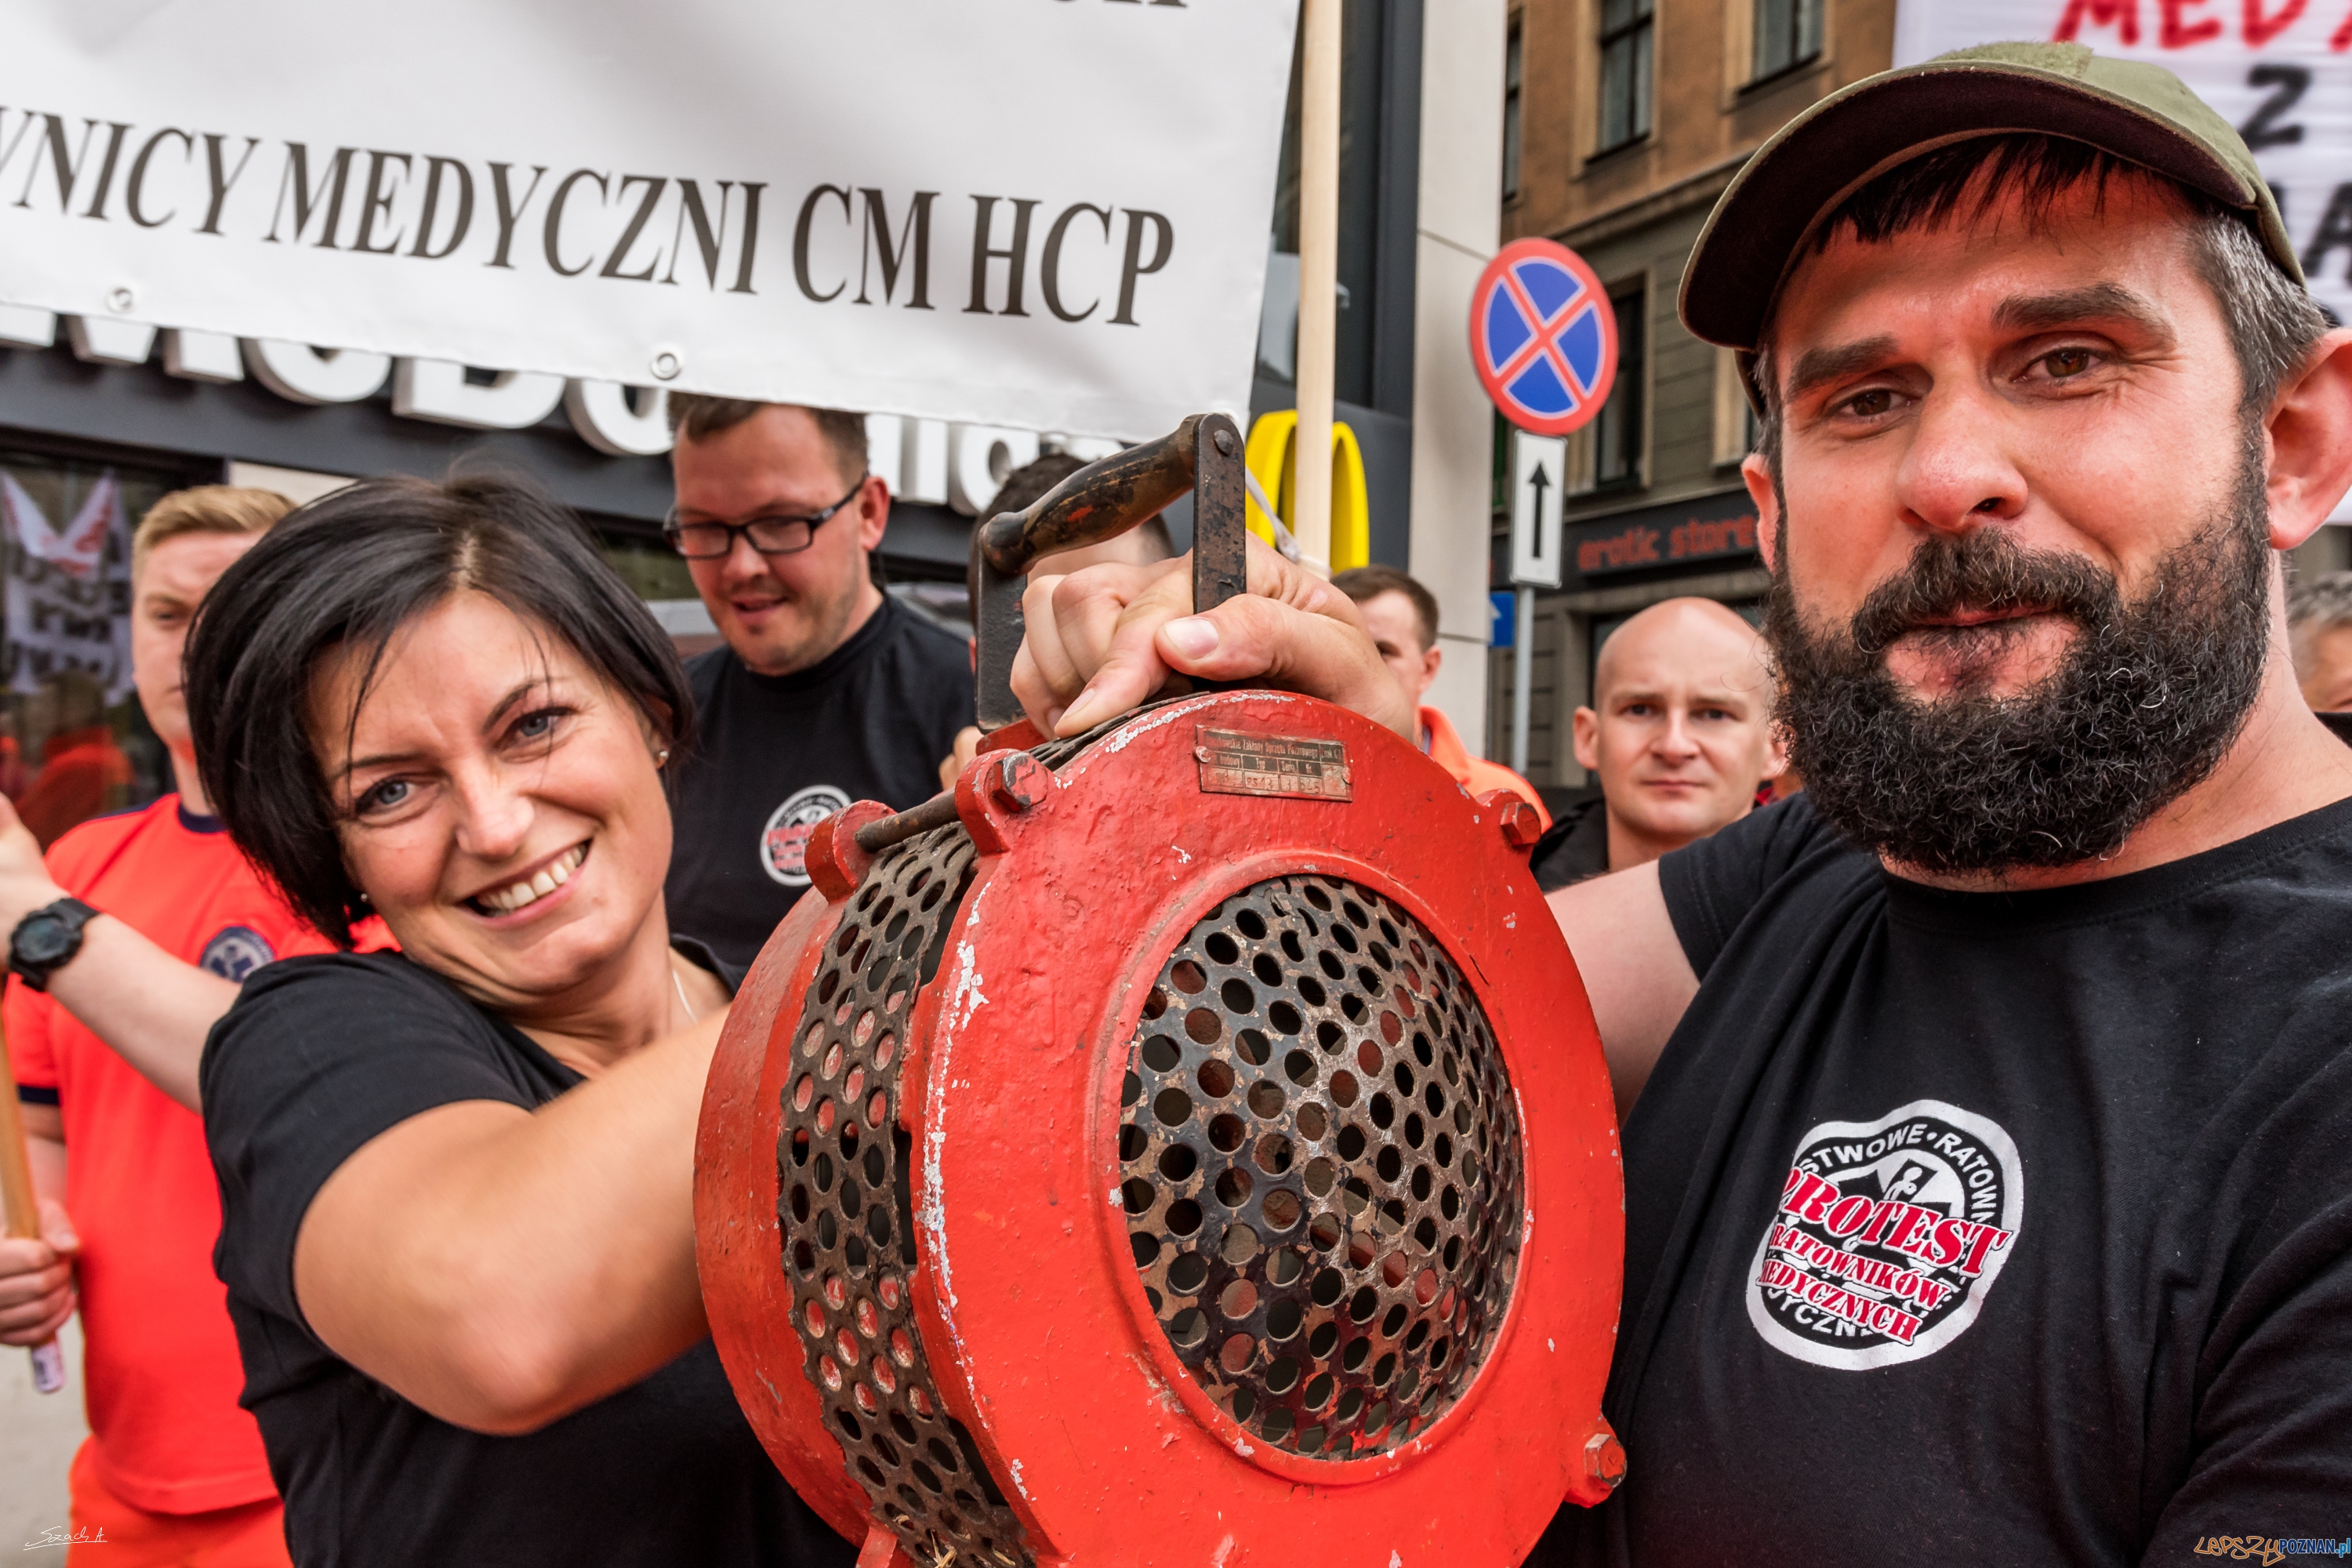 Protest Ratowników Medycznych w Poznaniu  Foto: ADAM SZACH